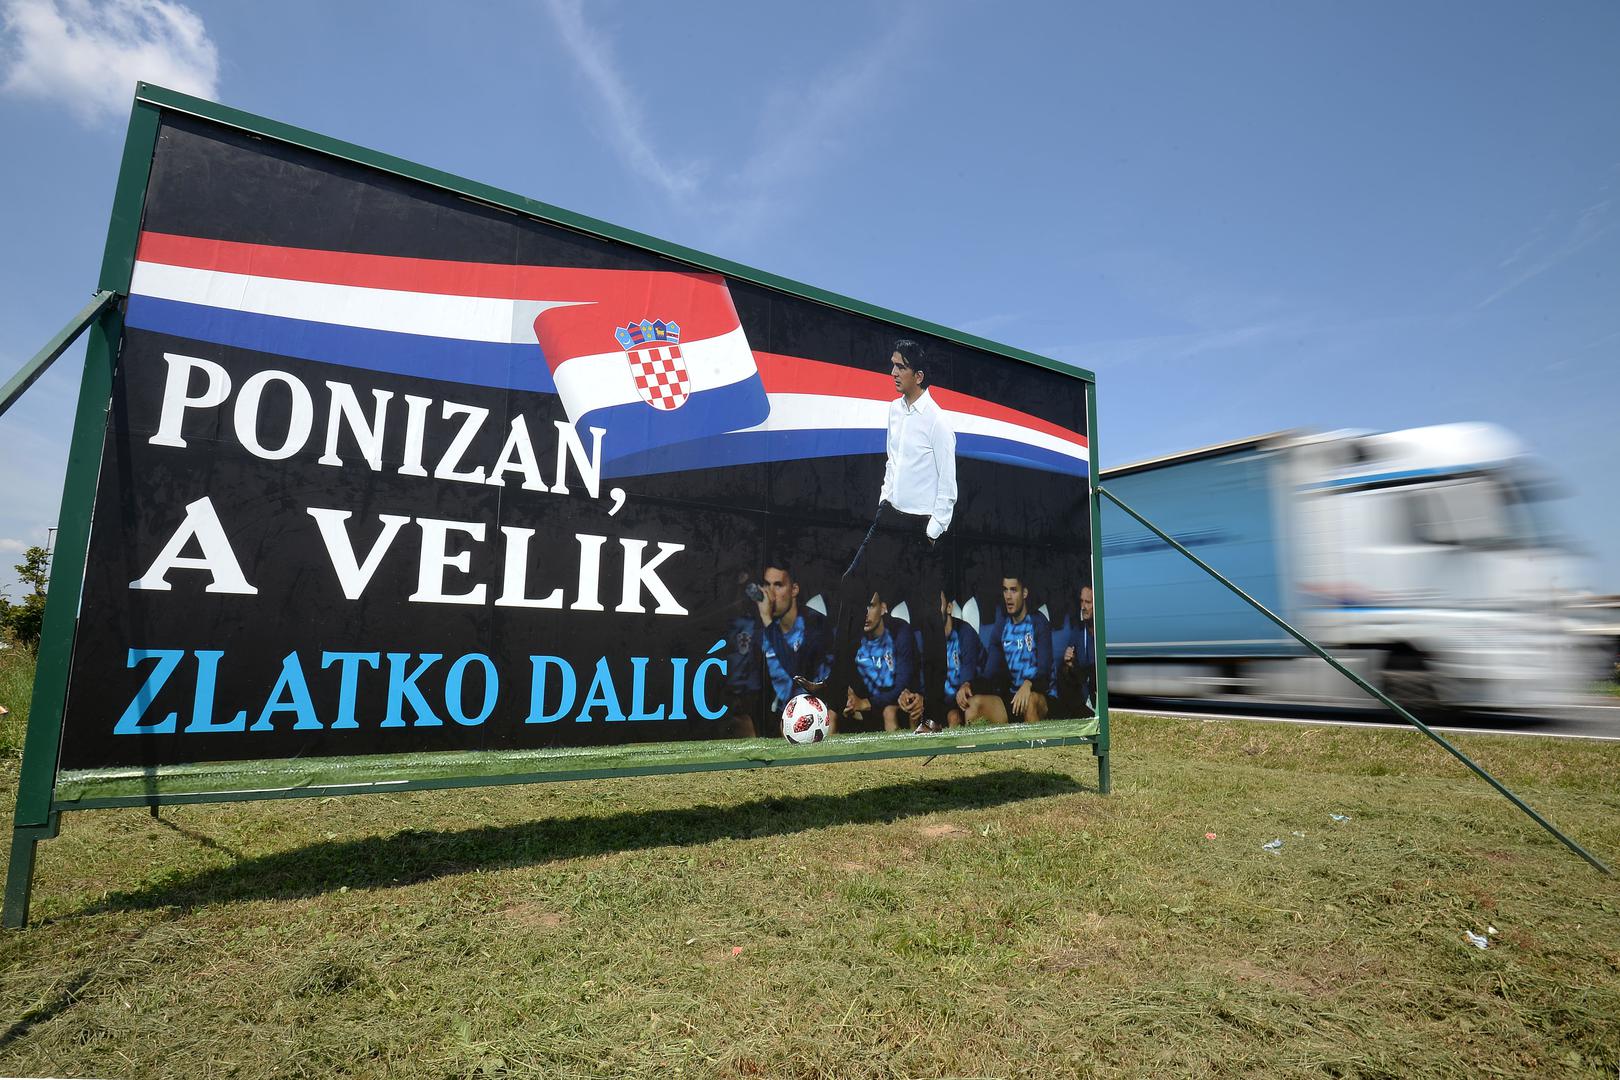 Dalić sada ima priliku ostvariti najveći uspjeh u povijesti reprezentacije - plasirati se u finale SP-a